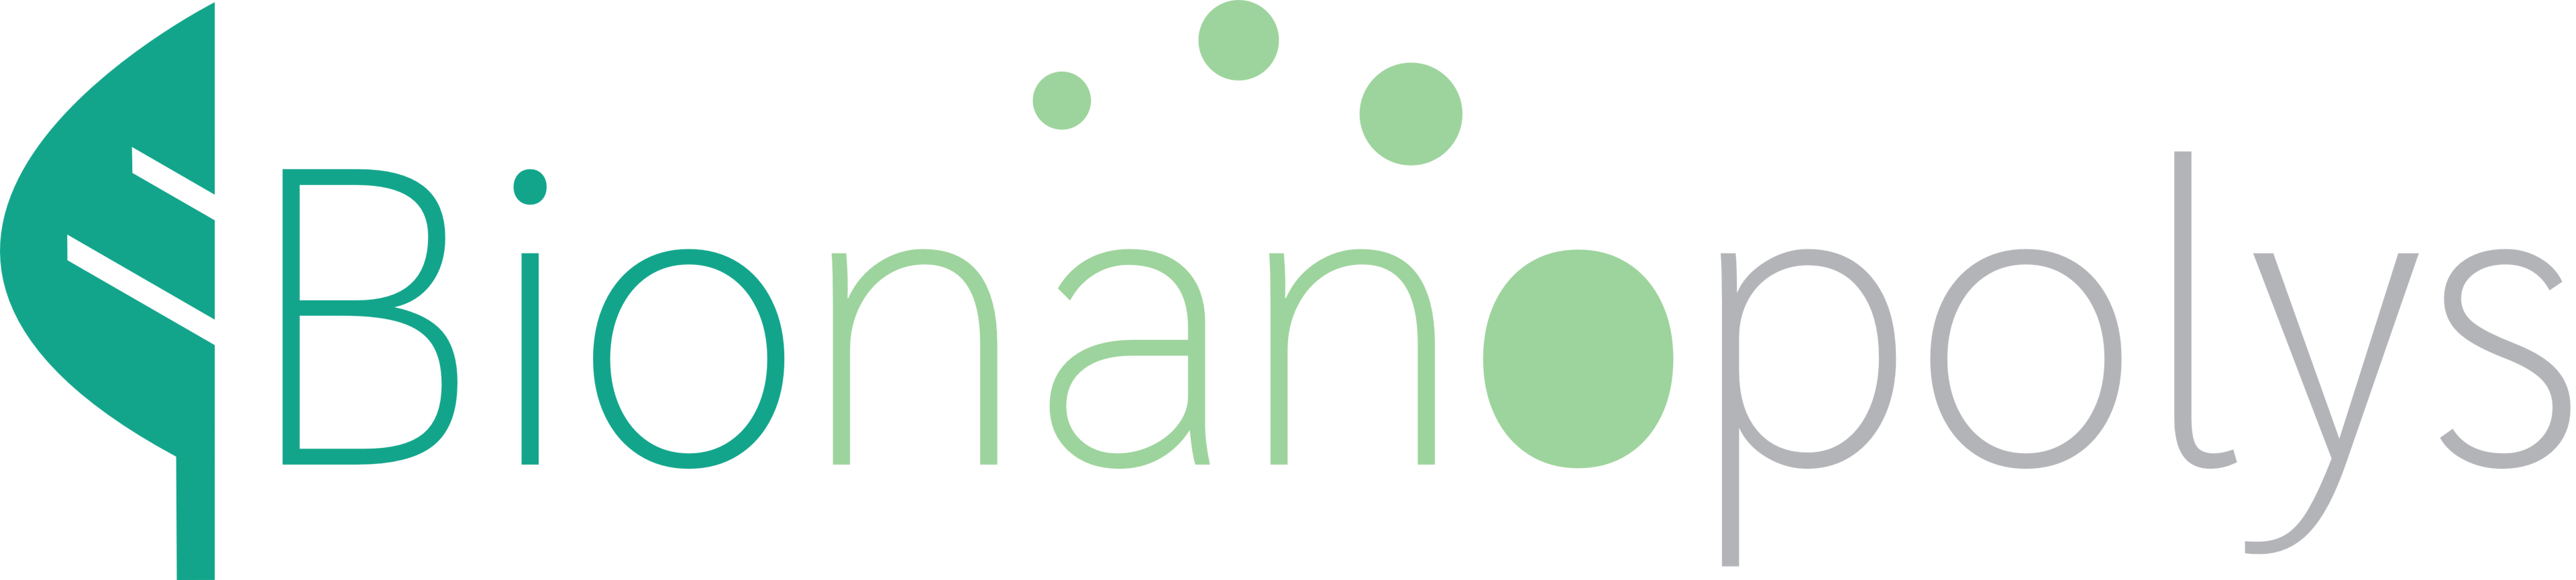 Bionano logo